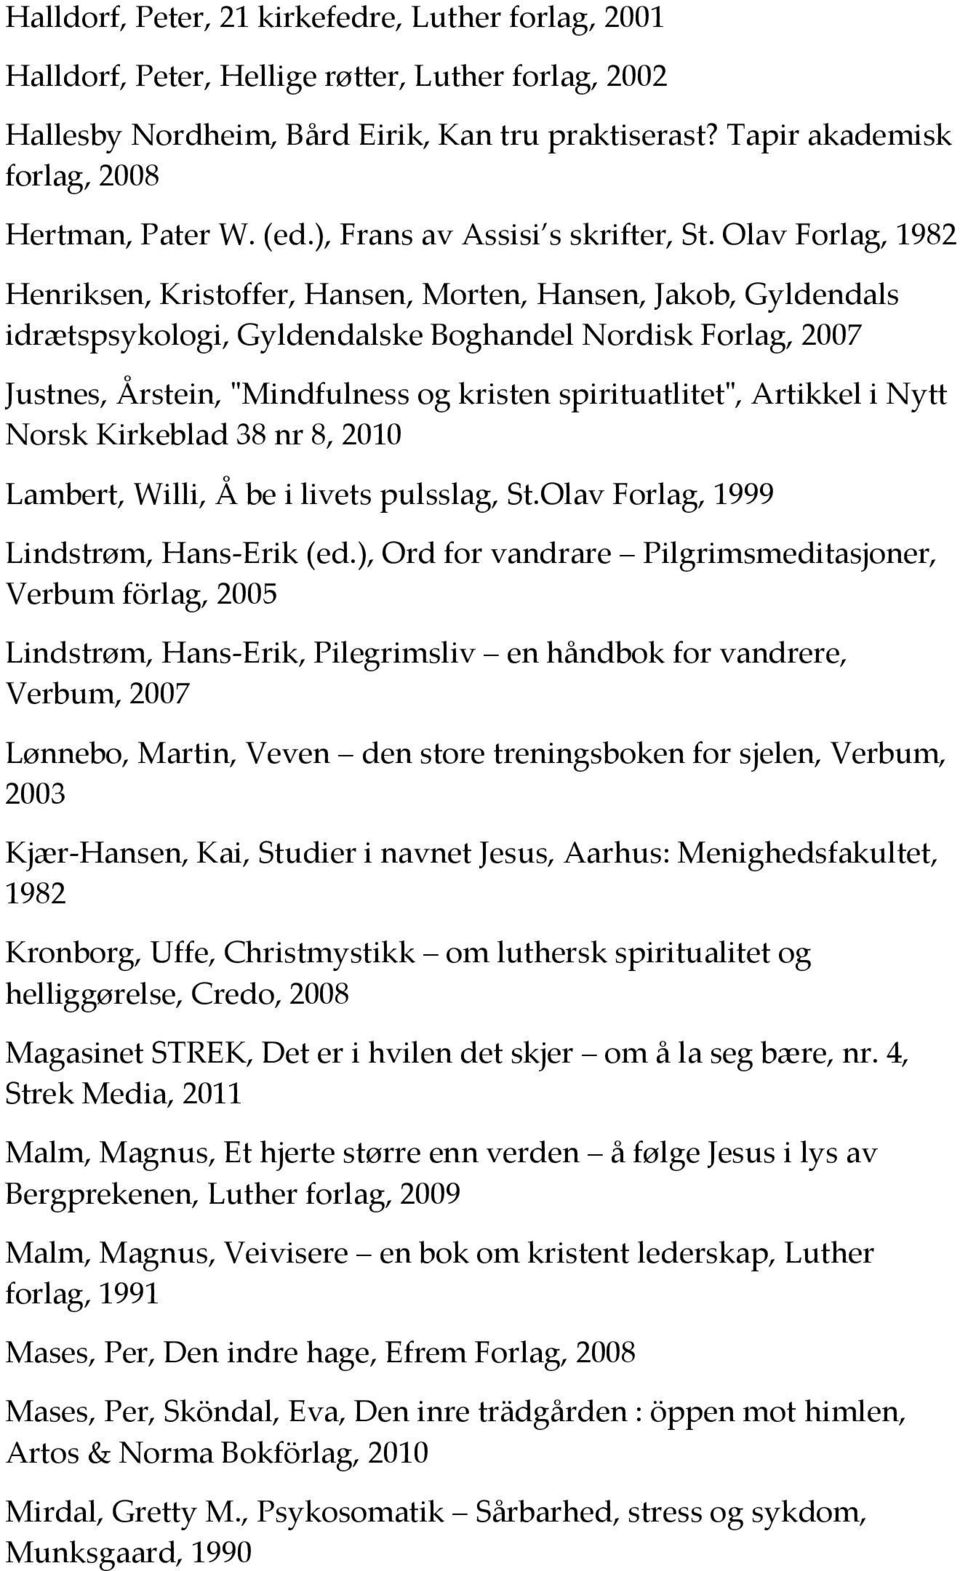 Olav Forlag, 1982 Henriksen, Kristoffer, Hansen, Morten, Hansen, Jakob, Gyldendals idrætspsykologi, Gyldendalske Boghandel Nordisk Forlag, 2007 Justnes, Årstein, "Mindfulness og kristen